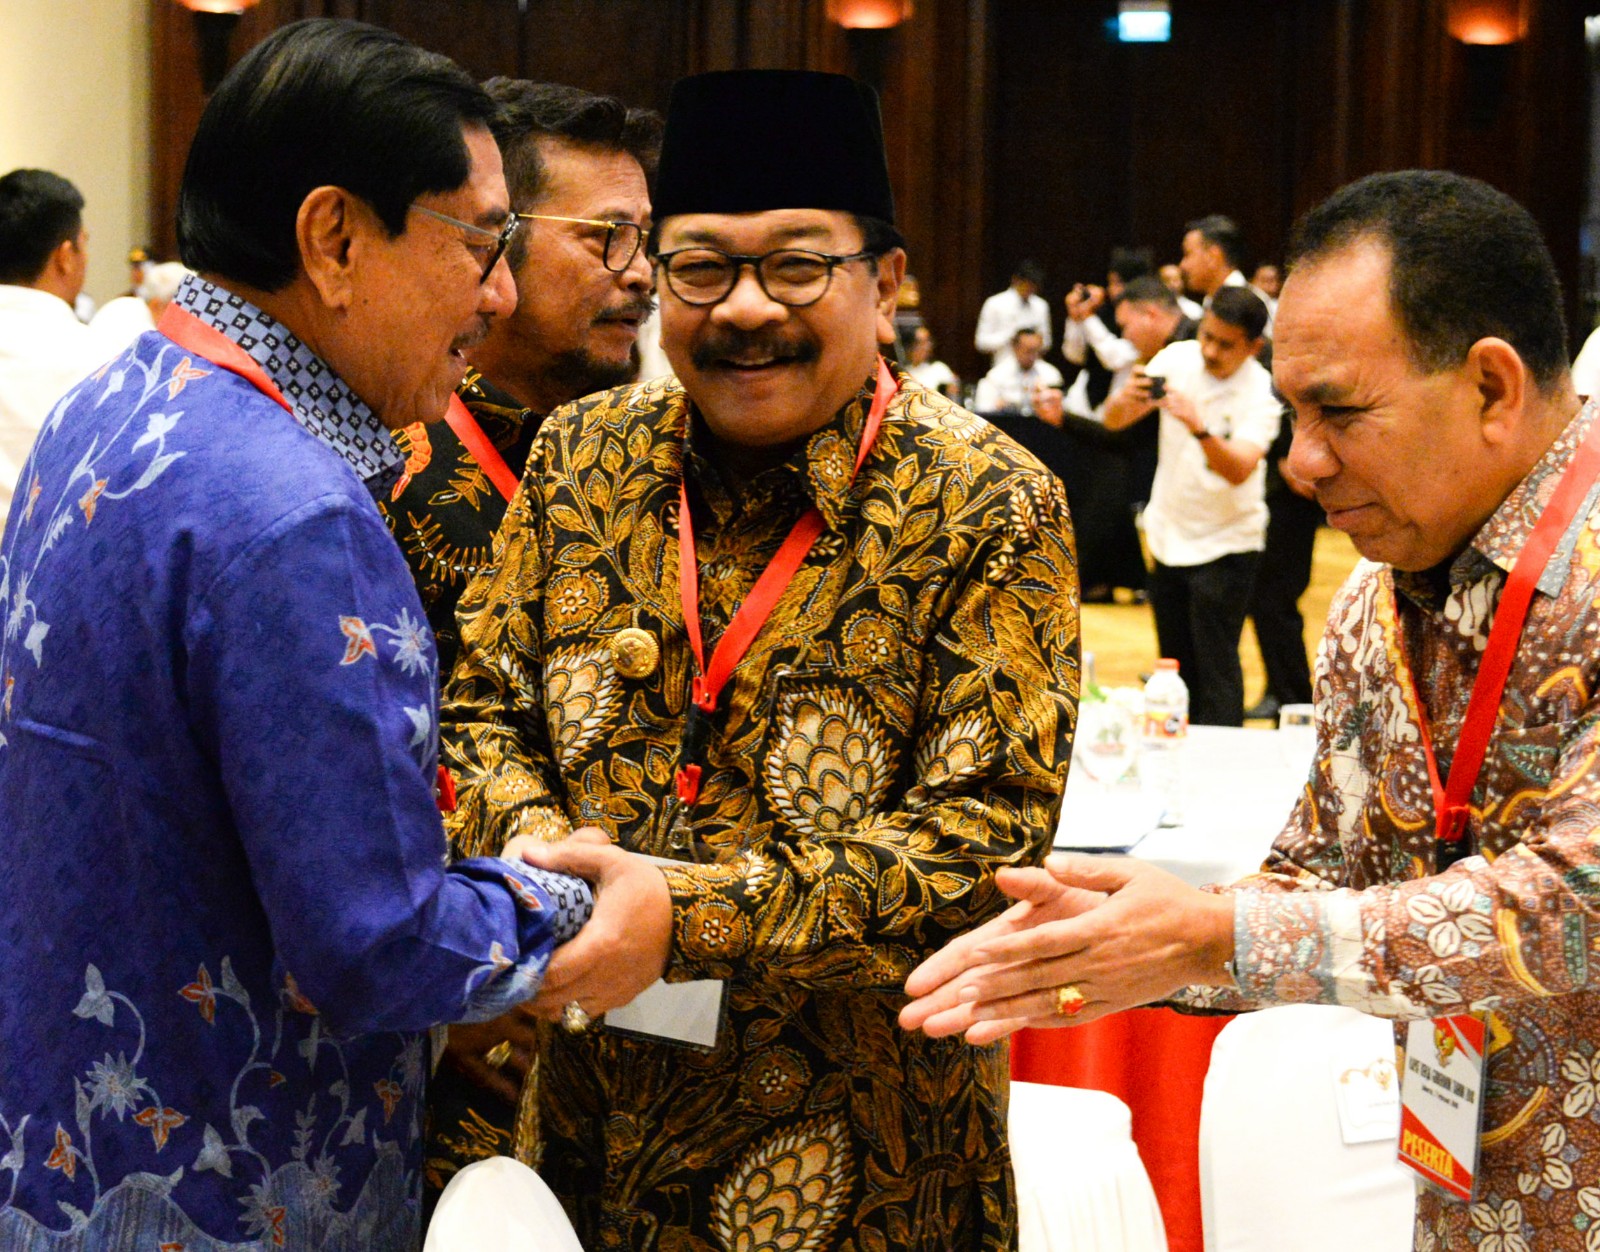 Soekarwo menghadiri rapat kerja gubernur seluruh Indonesia, di Hotel Bidakara, Jakarta, Rabu, 7 Februari 2018. (Foto: Humas Pemprov Jatim)